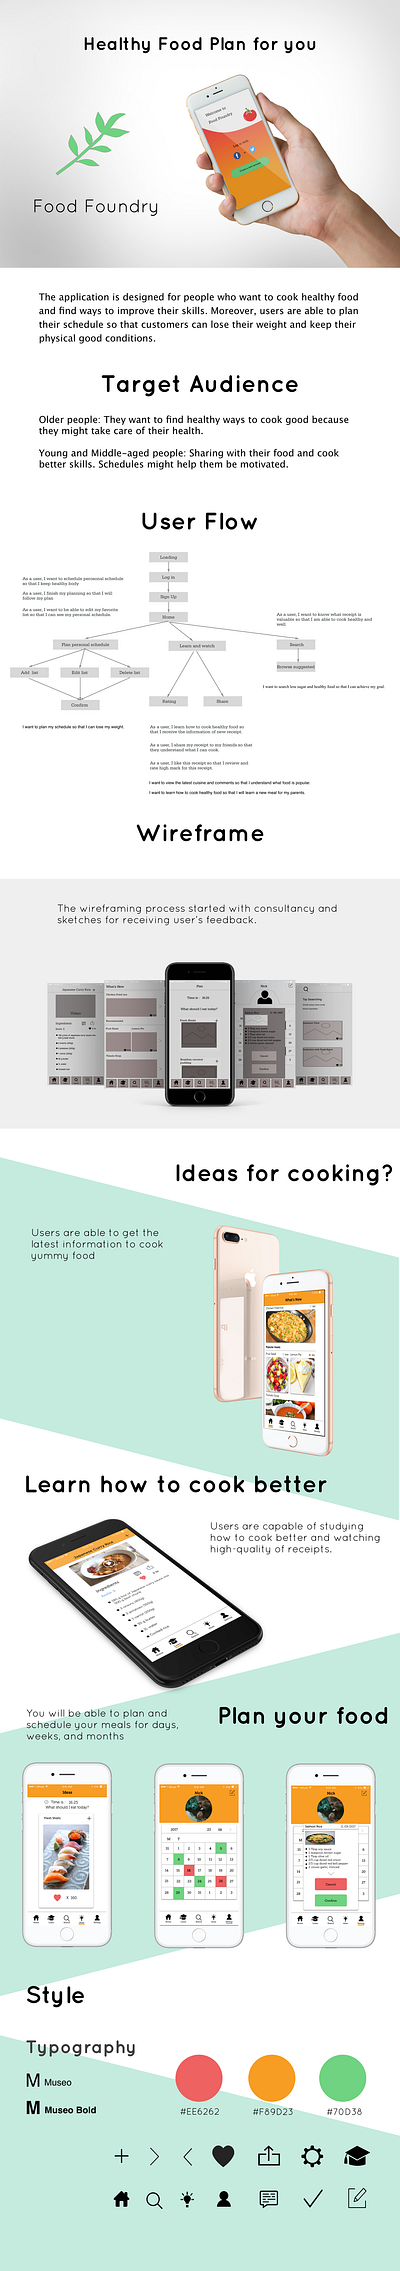 Food Foundry app app design branding design graphic design ui ux